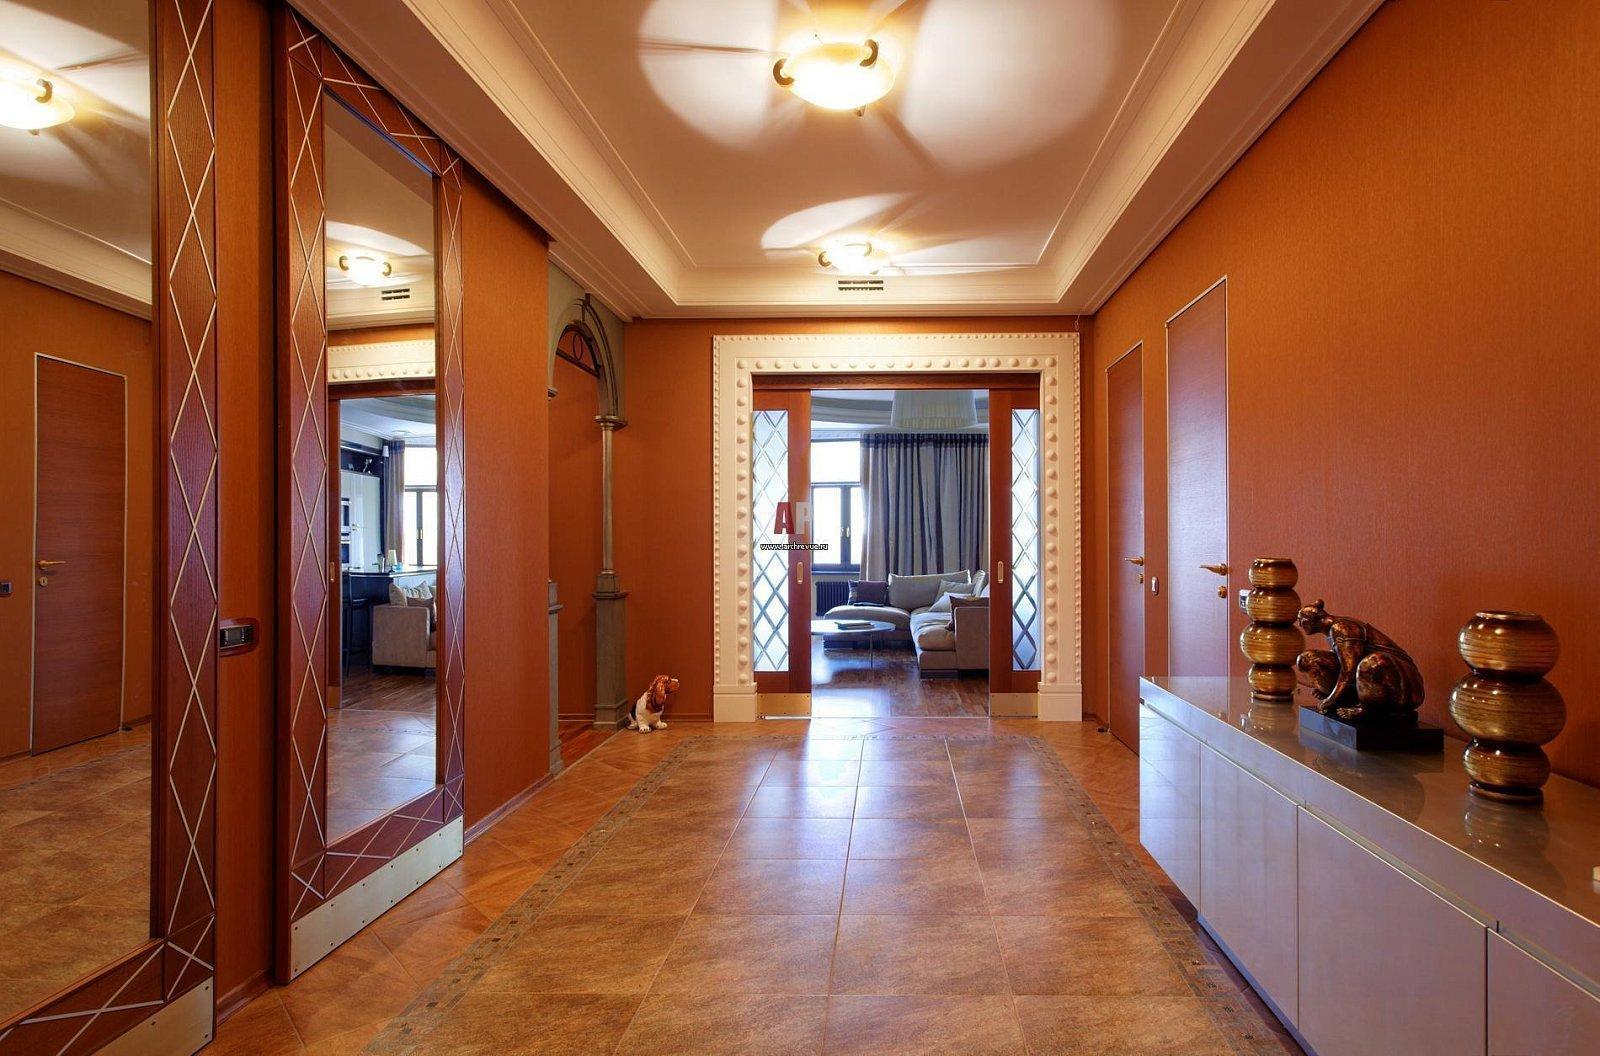 Дизайн коридора в квартире: 124 фото (реальные) + идеи и решения